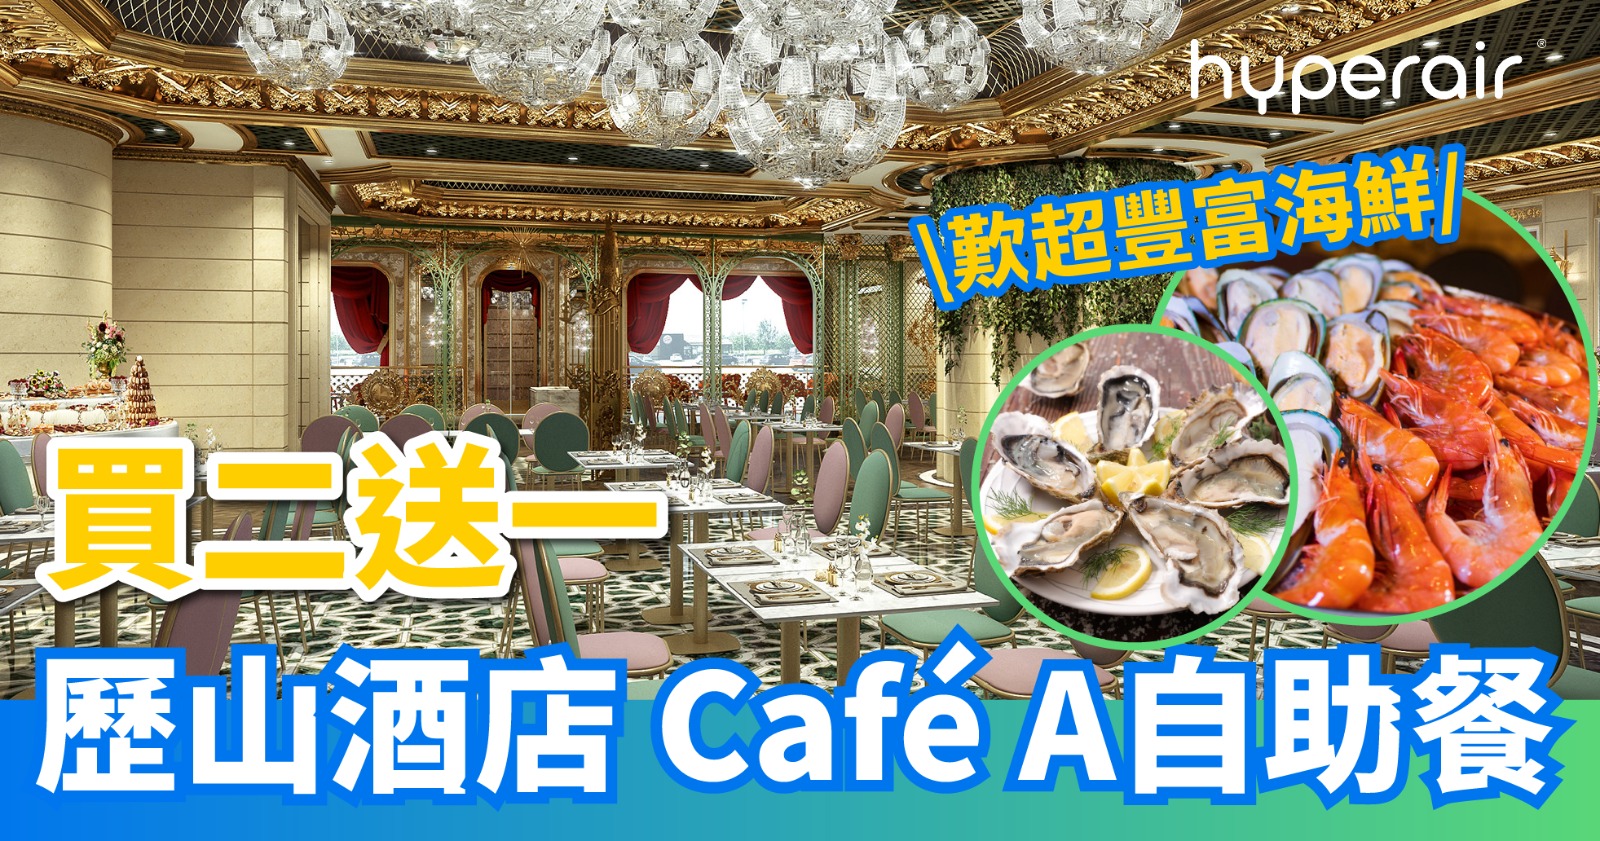 21:00開搶【歷山酒店 Café A】半自助午餐及半自助晚餐買二送一，每位HK$259+